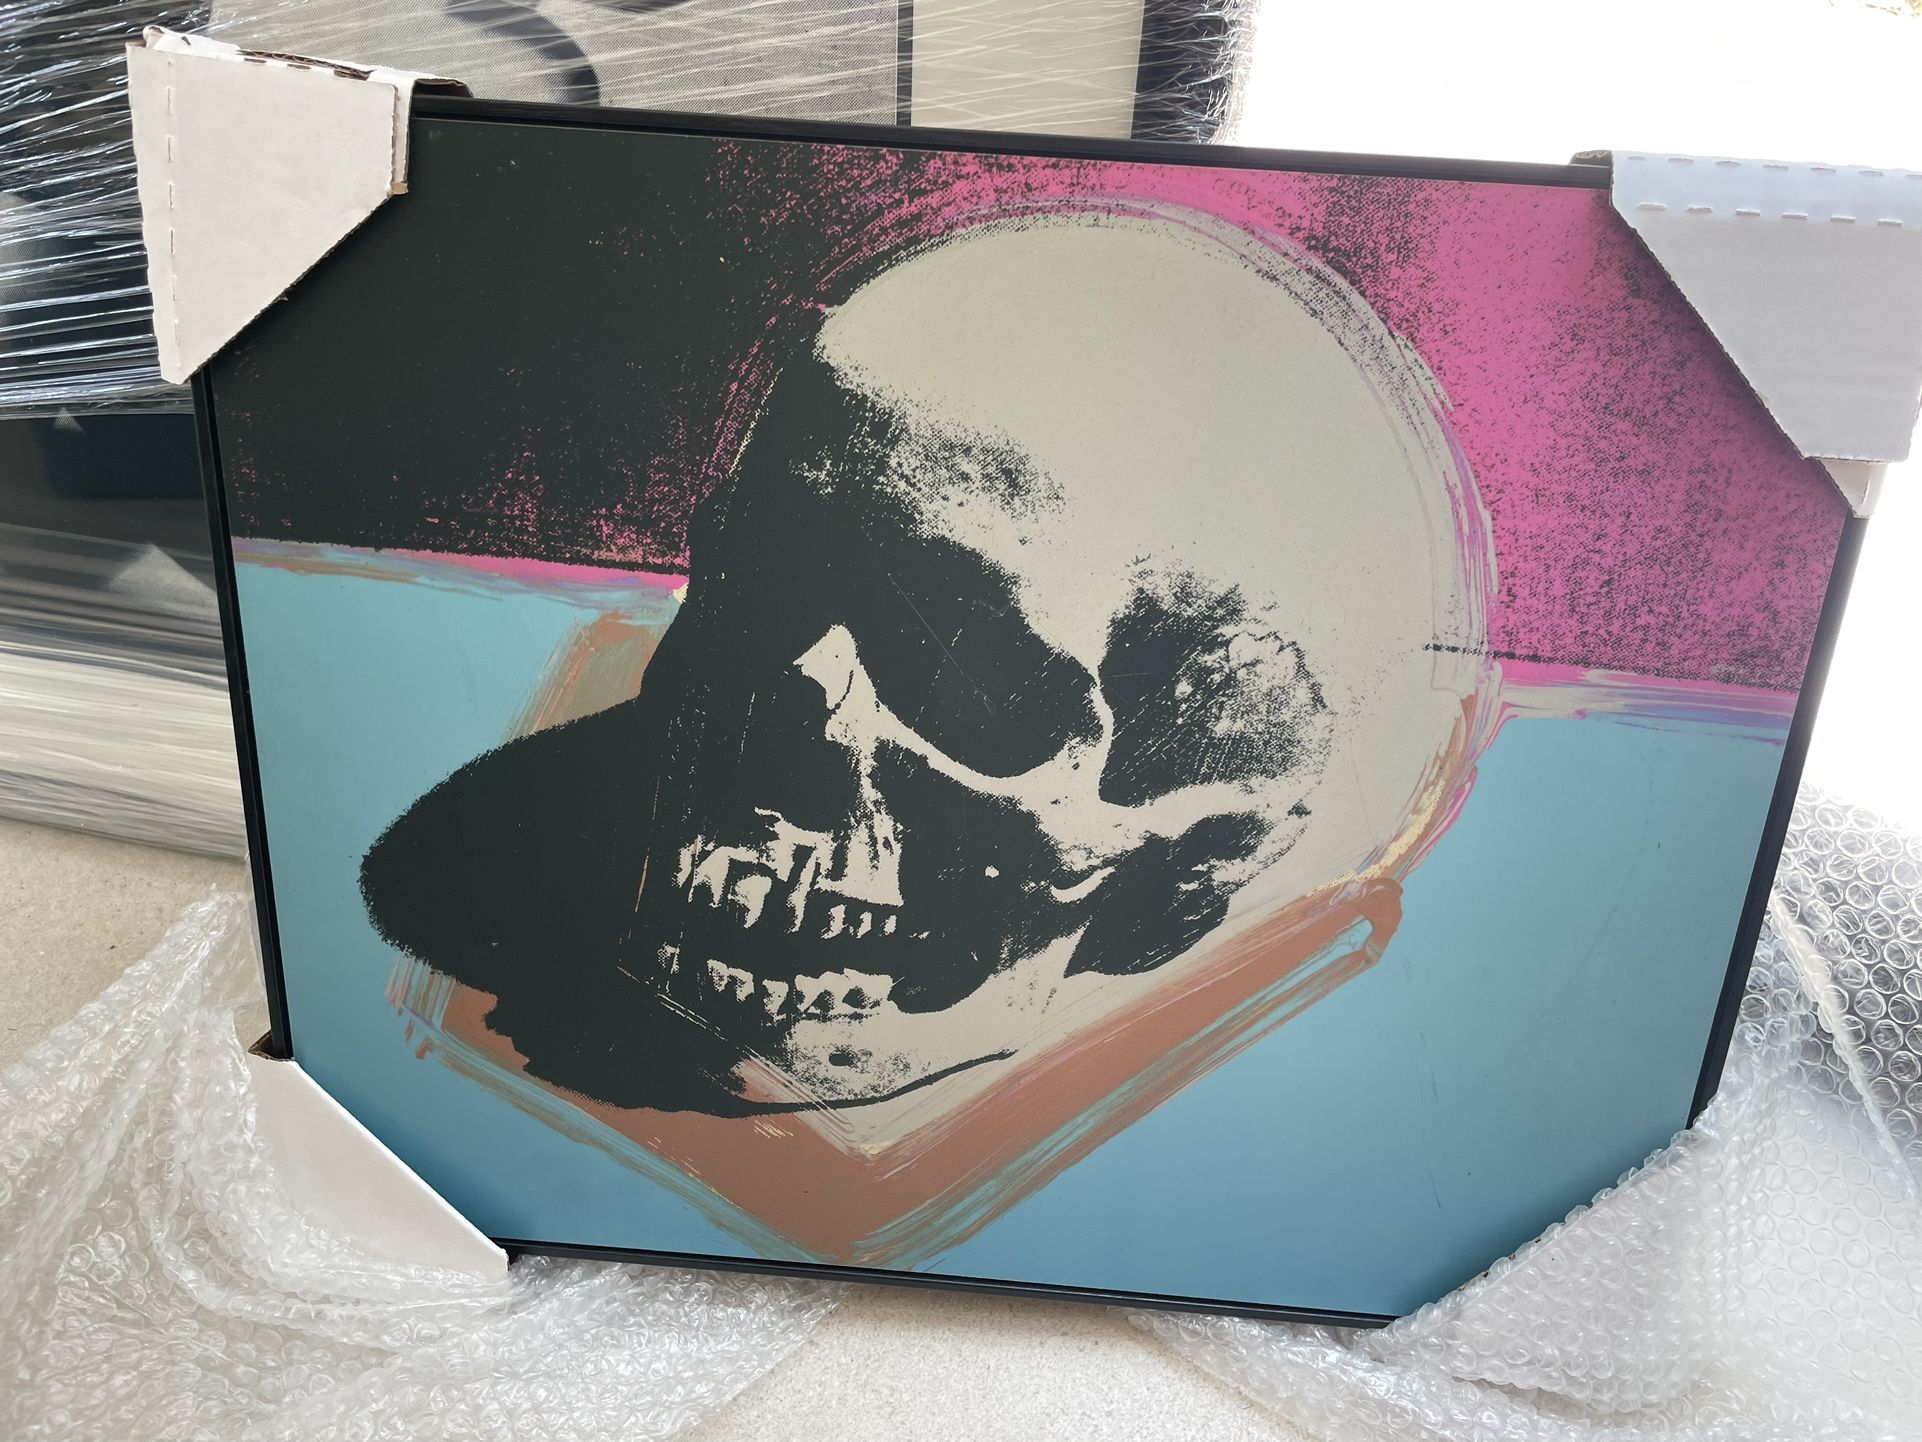 Skull Art Print Is